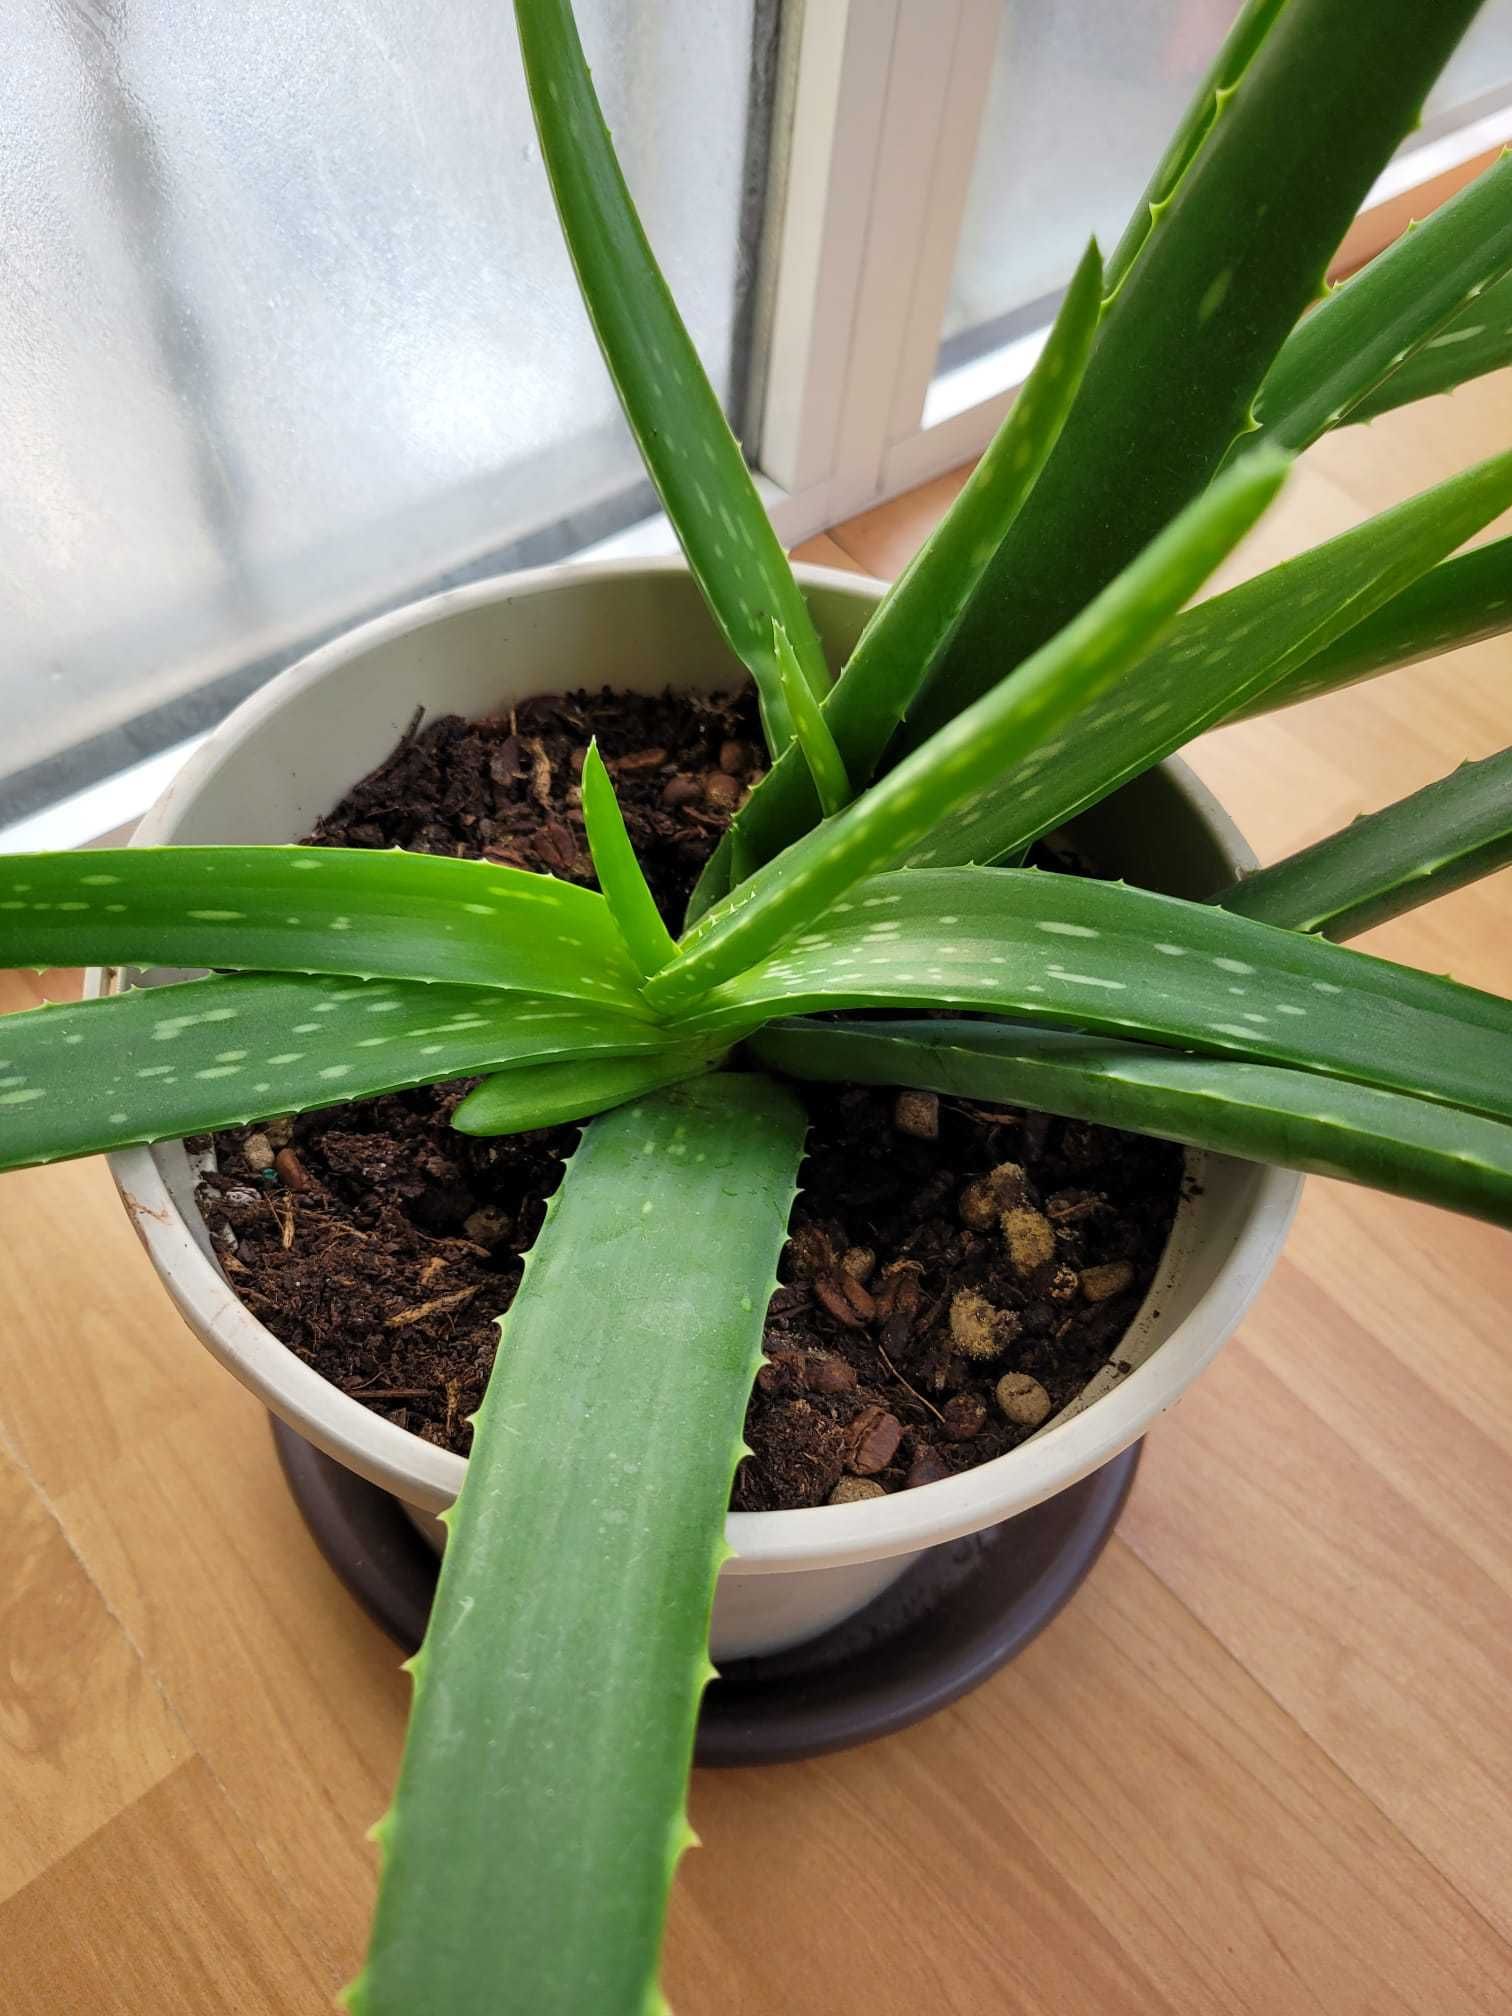 Vendo planta Aloe Vera adulta